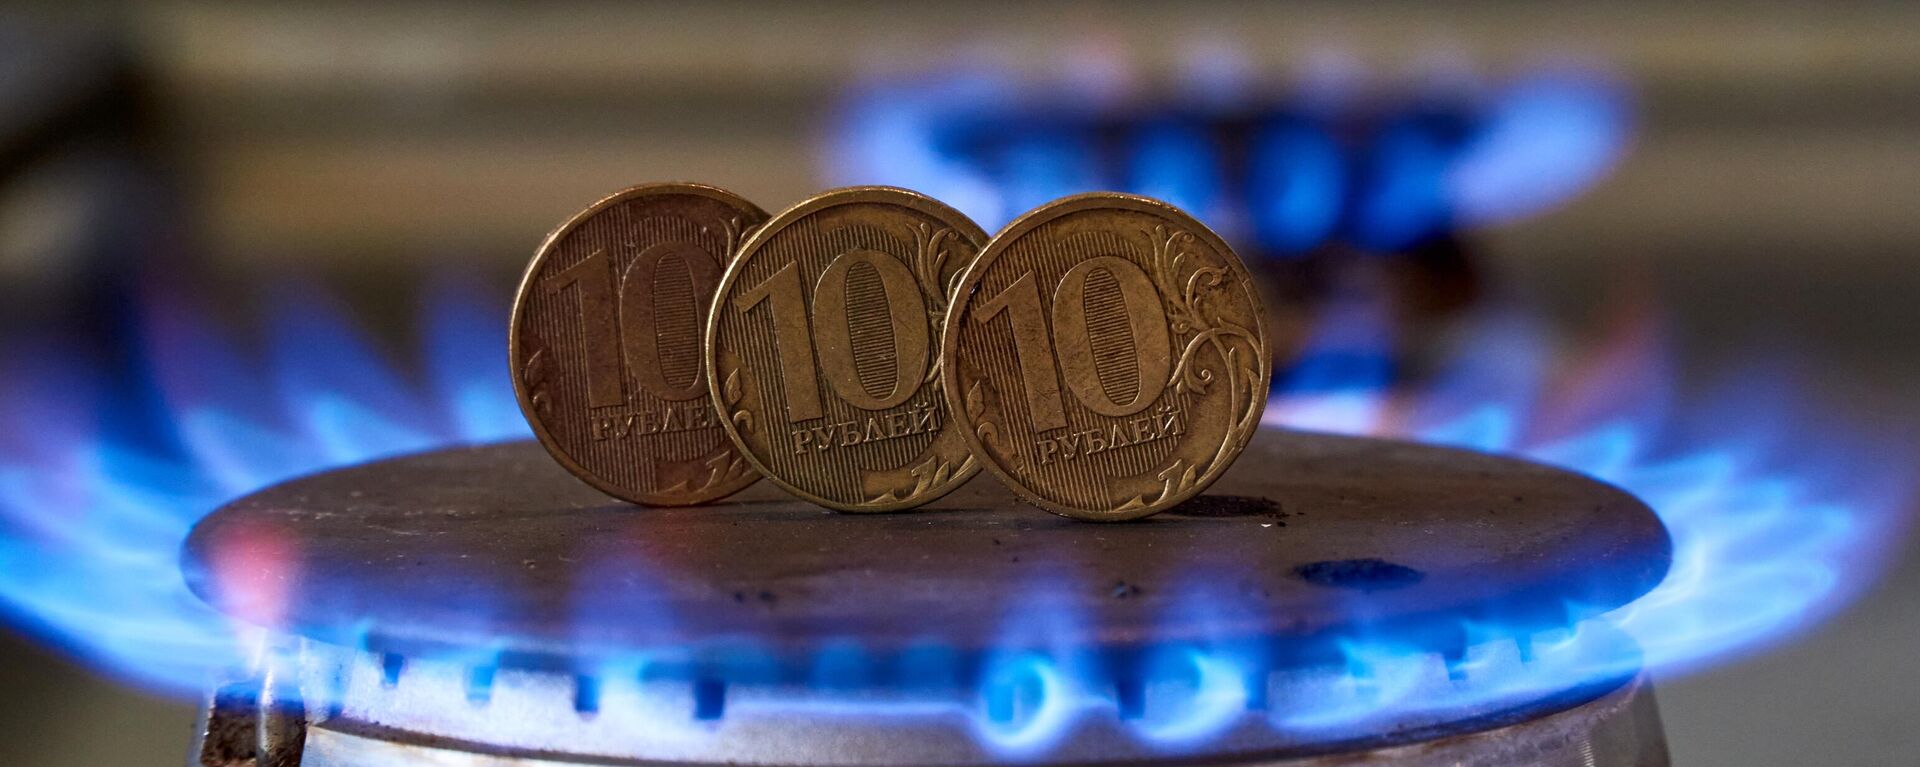 Монеты номиналам десять рублем на газовой плите - Sputnik Абхазия, 1920, 30.04.2022